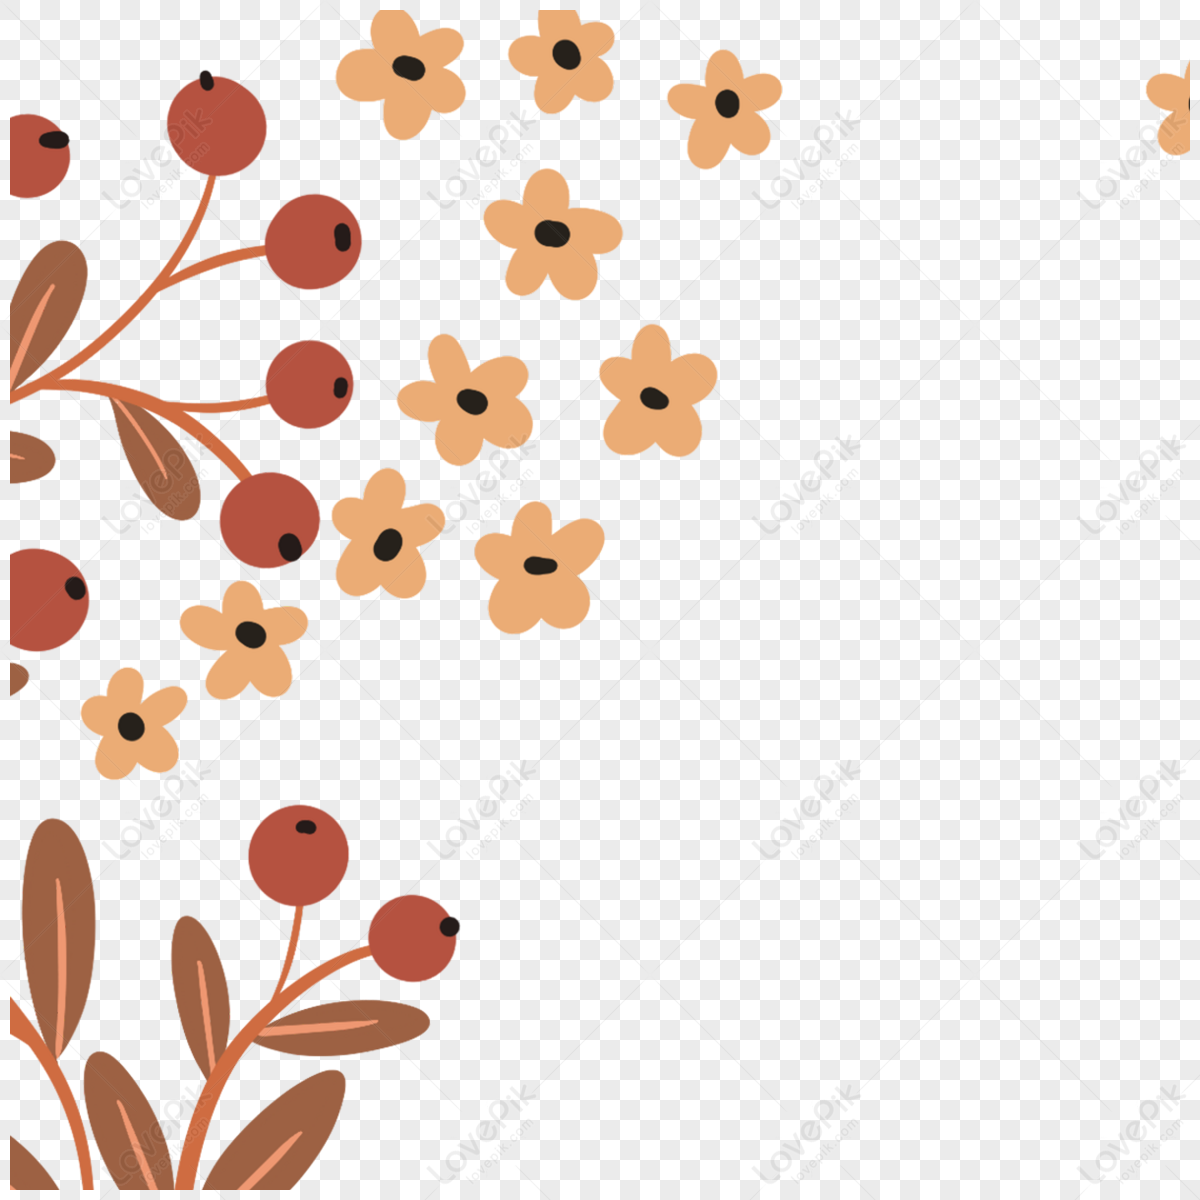 Borde de flores decorativas, moradas y marrones, png